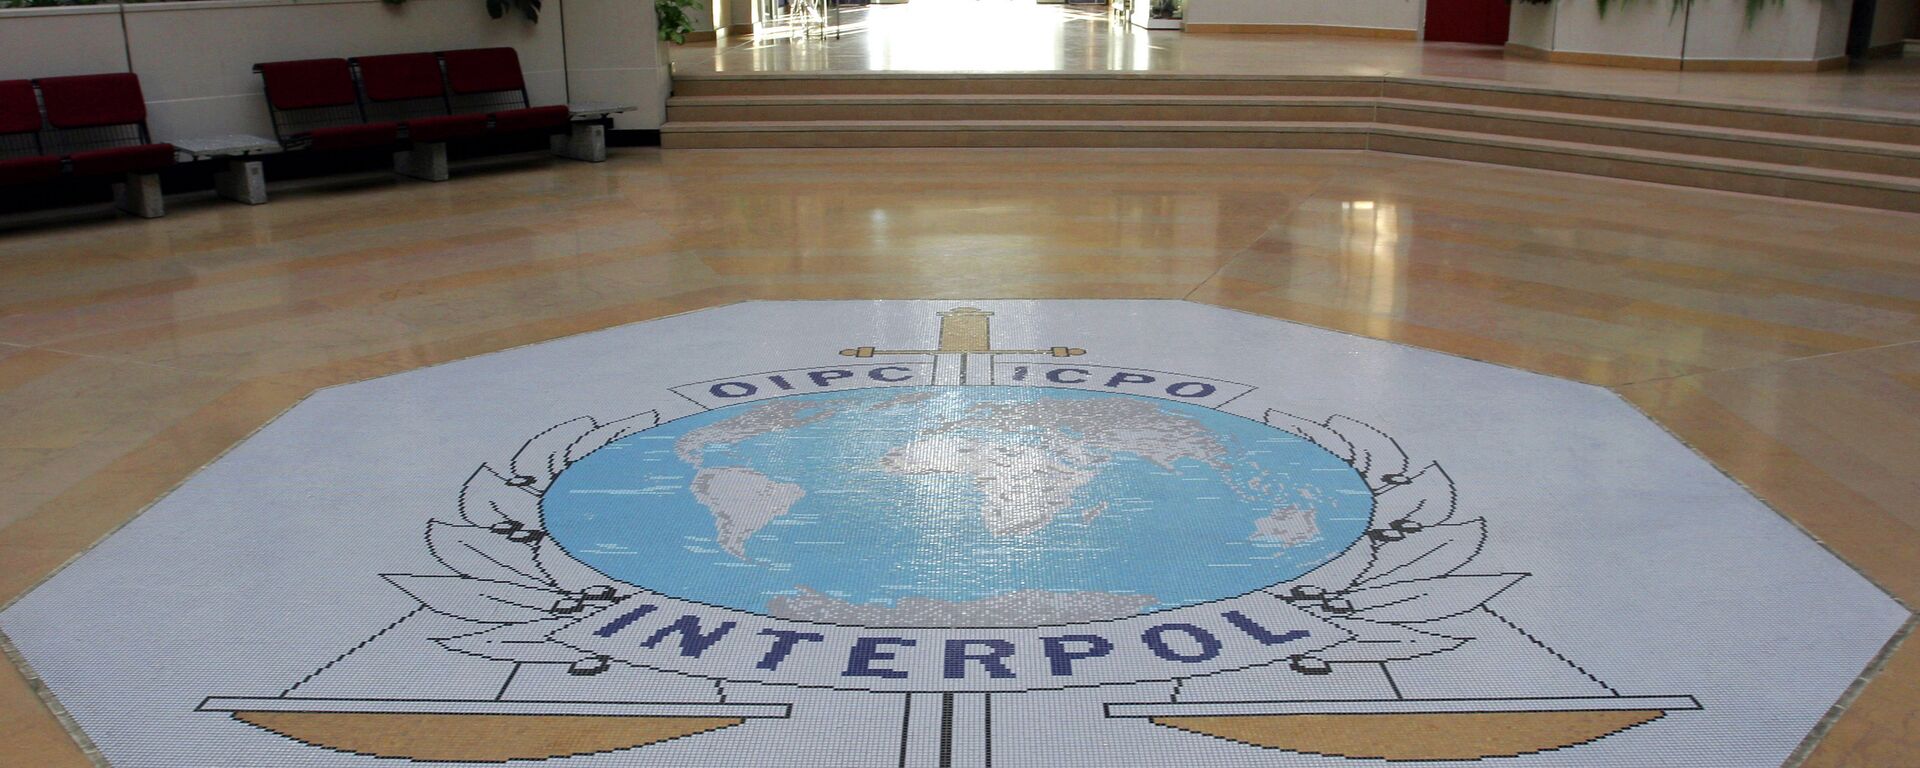 Hall de entrada da sede da Interpol, em Lyon, na França - Sputnik Brasil, 1920, 09.04.2021